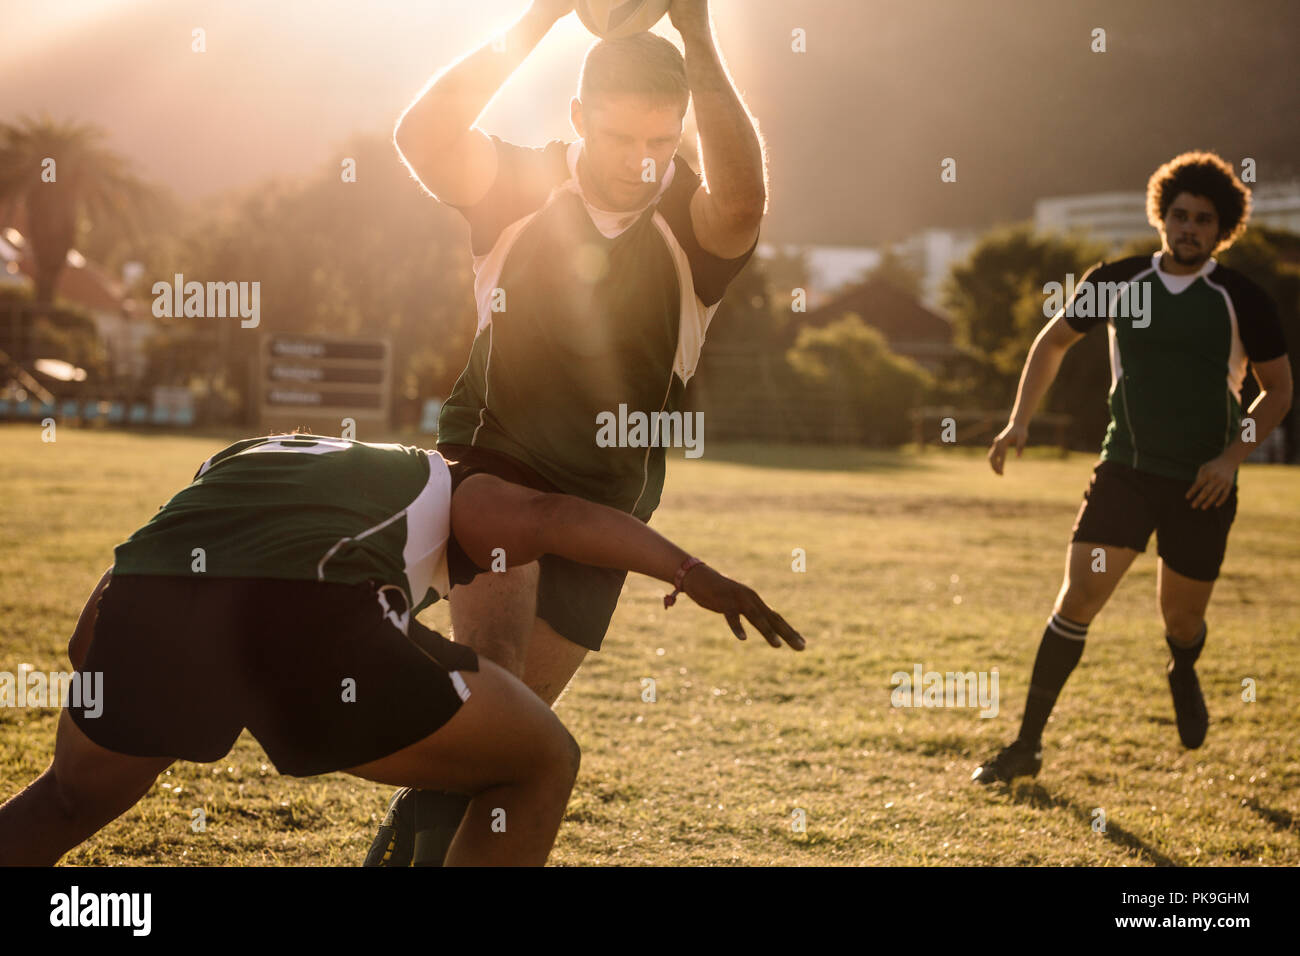 rugby-Spieler laufen mit Ball und Tackling während des Spiels. rugby-Spieler kämpfen im Spiel um den Ball. Stockfoto